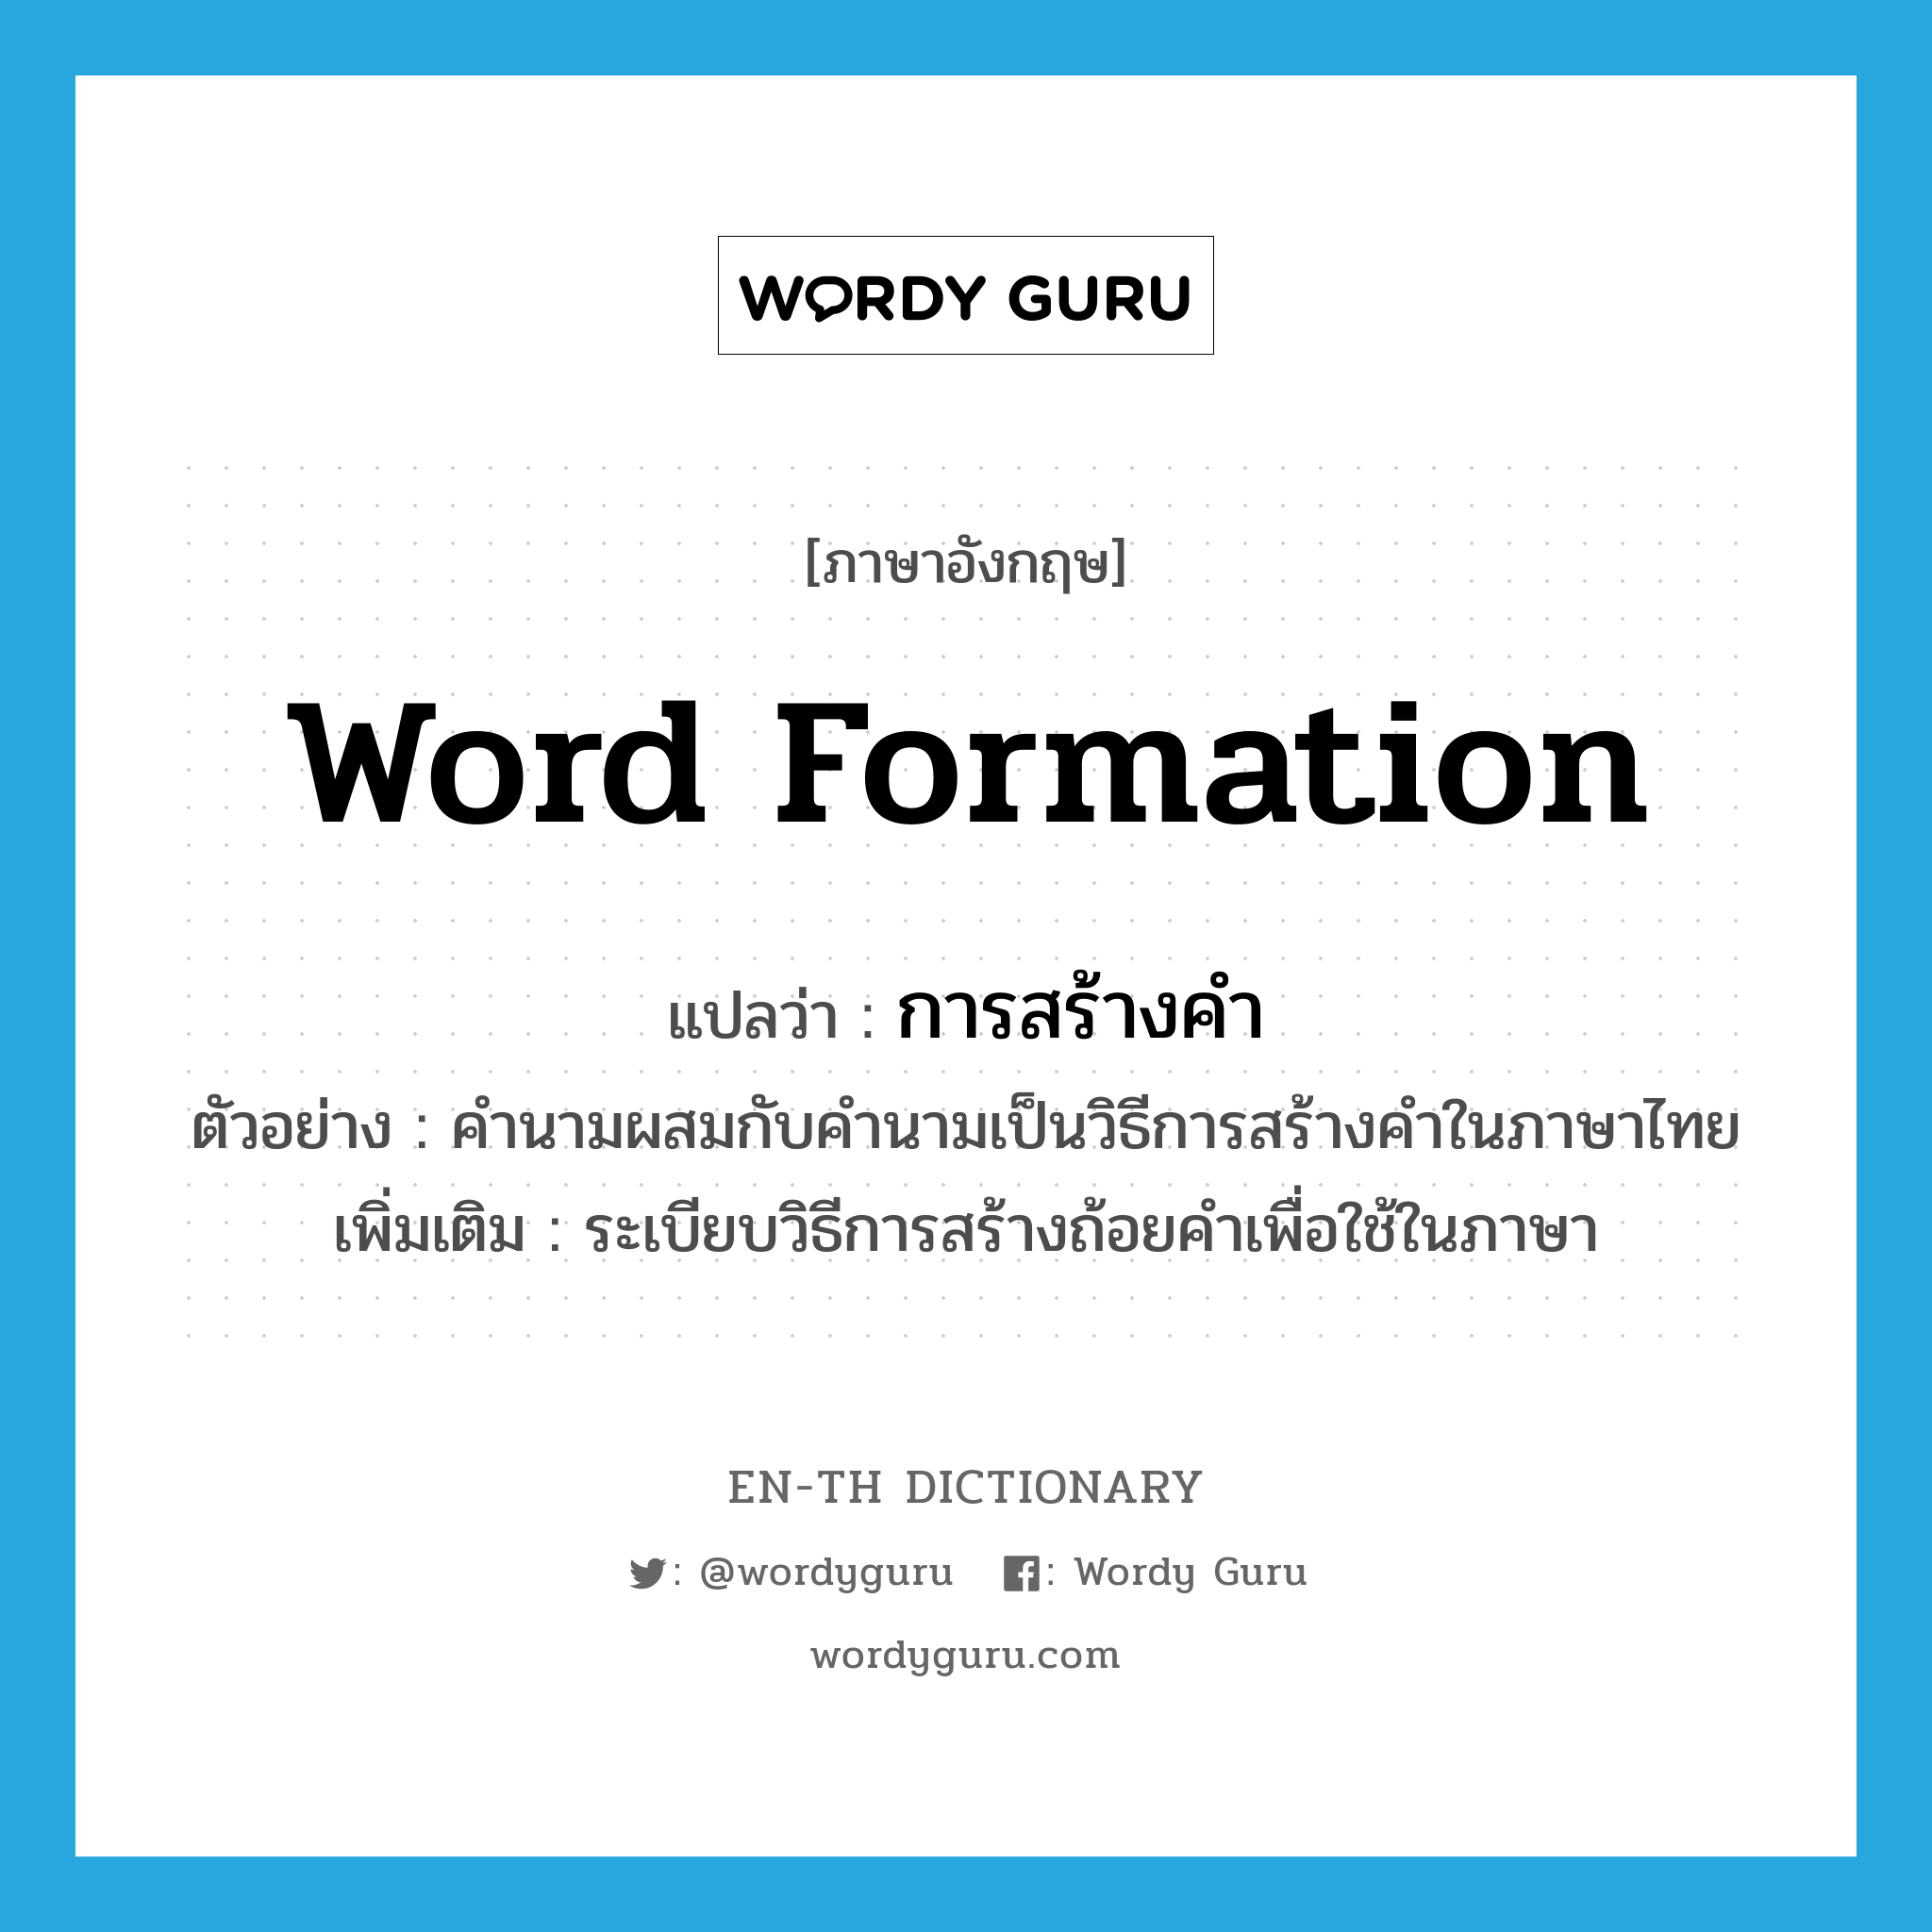 การสร้างคำ ภาษาอังกฤษ?, คำศัพท์ภาษาอังกฤษ การสร้างคำ แปลว่า word formation ประเภท N ตัวอย่าง คำนามผสมกับคำนามเป็นวิธีการสร้างคำในภาษาไทย เพิ่มเติม ระเบียบวิธีการสร้างถ้อยคำเพื่อใช้ในภาษา หมวด N